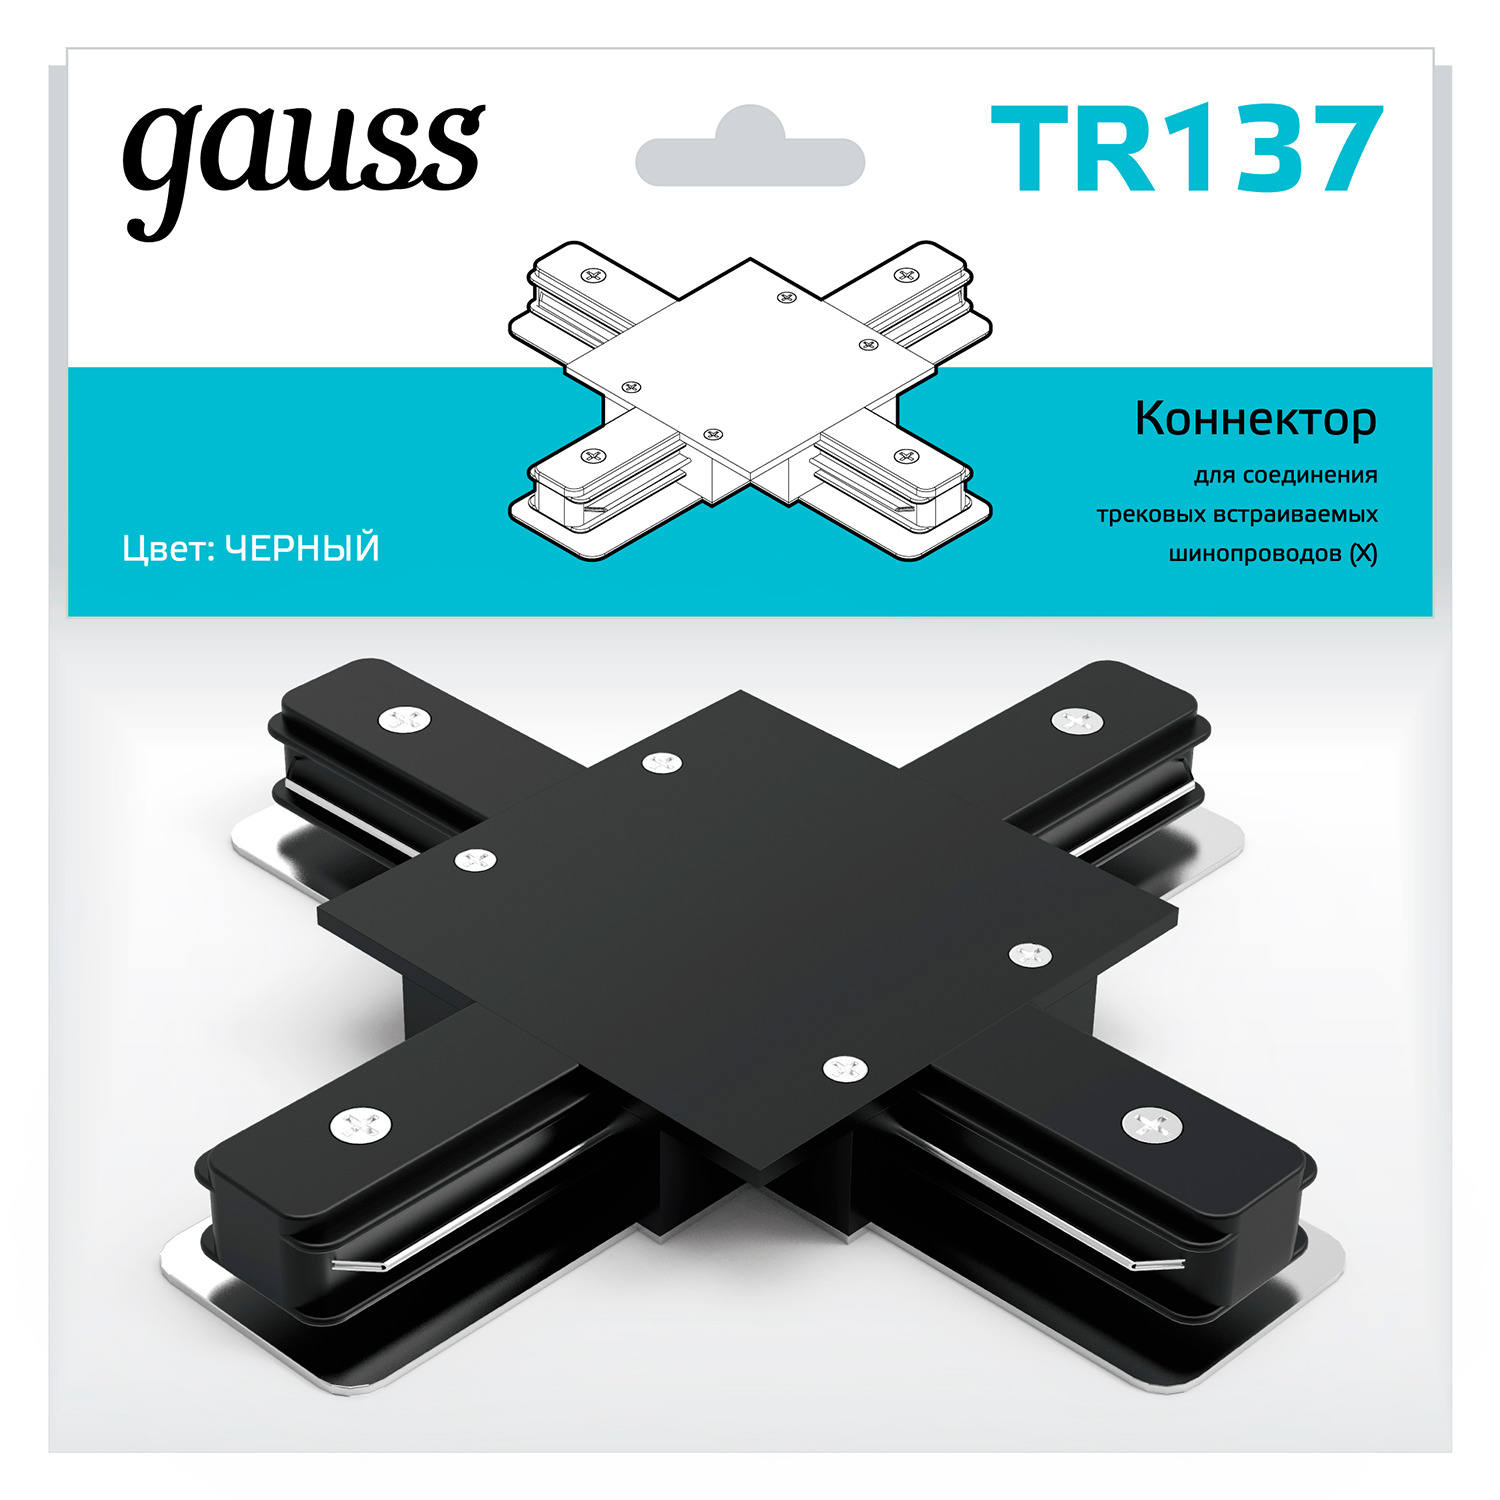 Коннектор Gauss для встраиваемых трековых шинопроводов (+) черный коннектор gauss для трековых шинопроводов t